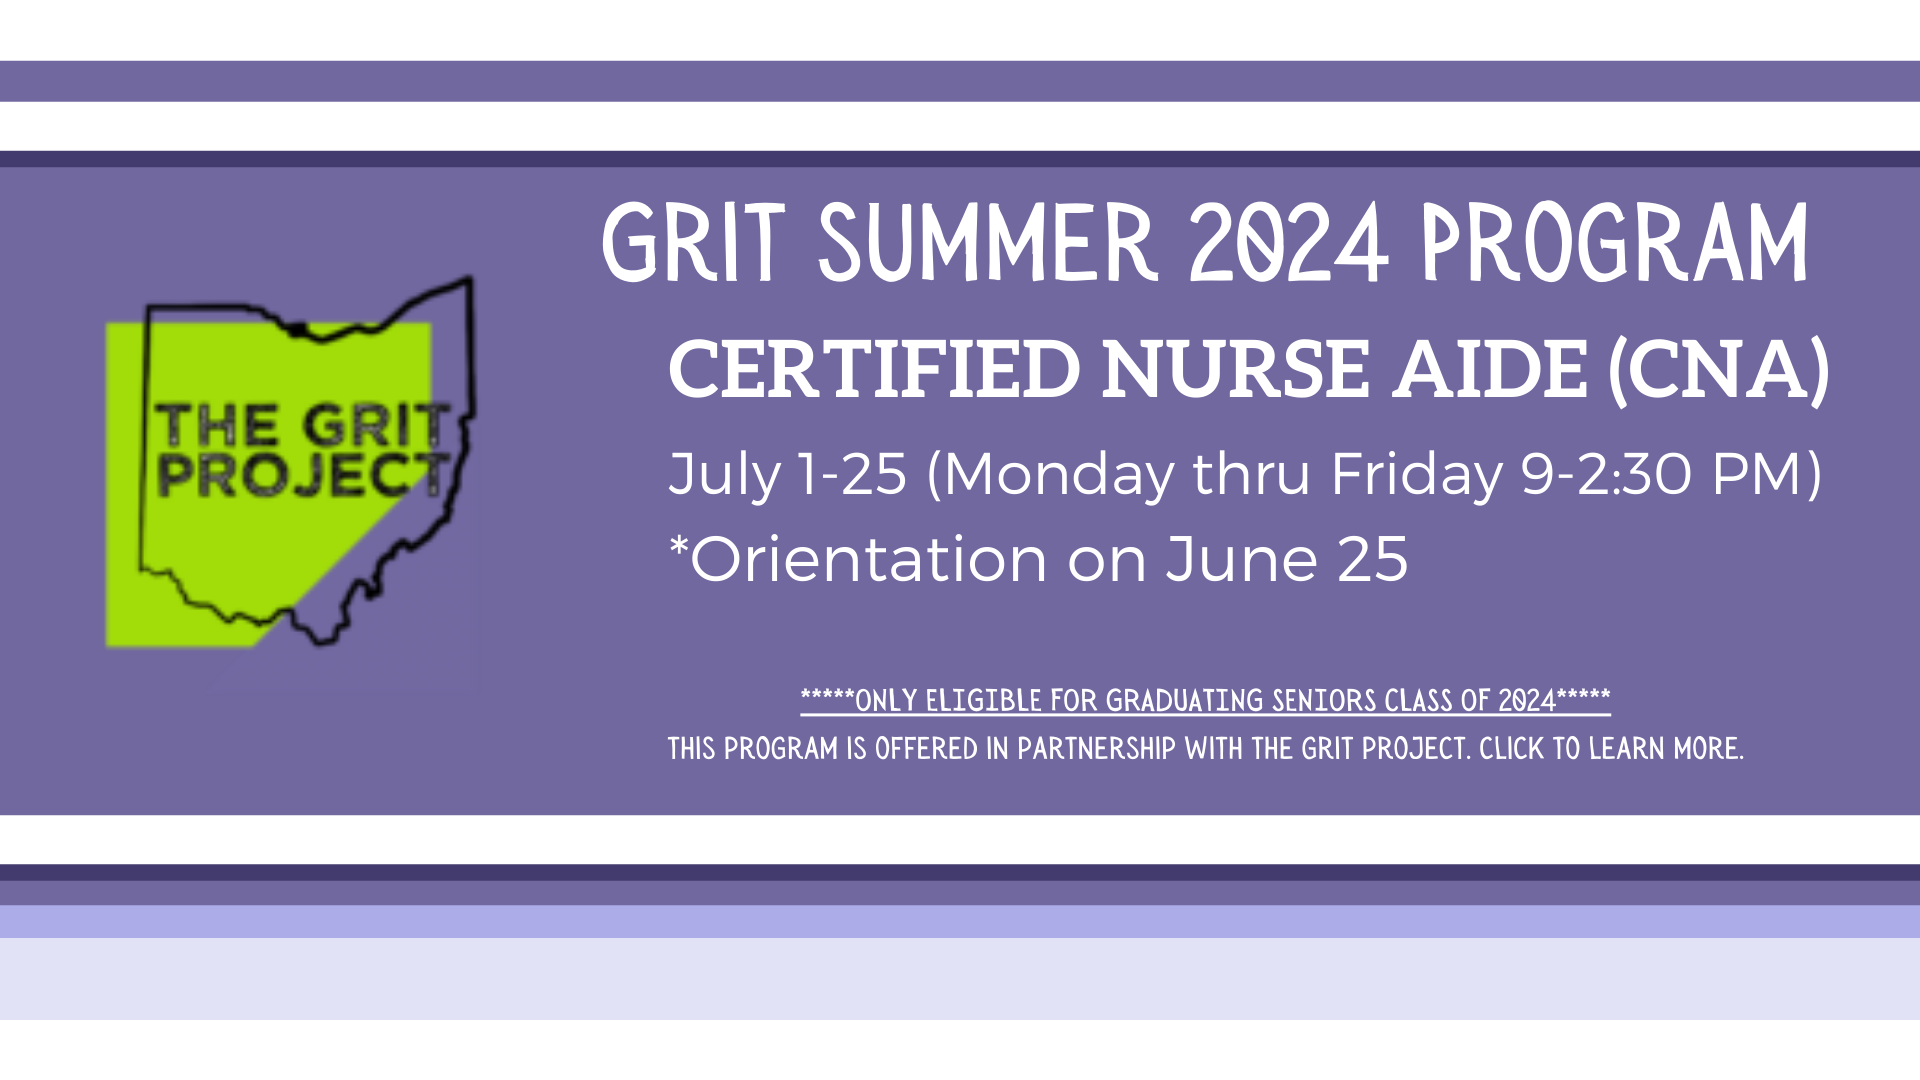 GRIT Program Certified Nurse Aide